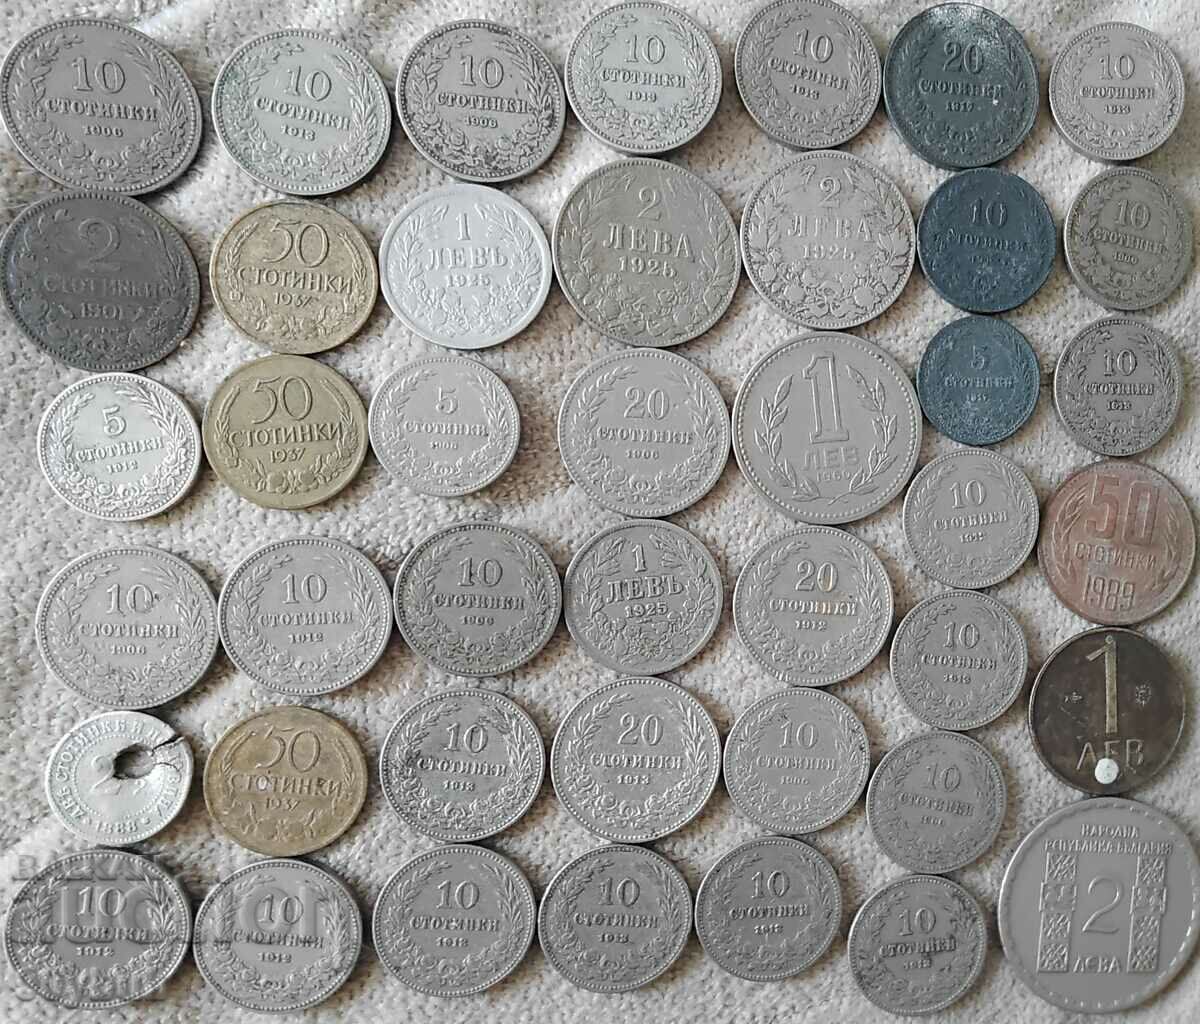 Bulgaria peste 40 buc. monede în mare parte regale